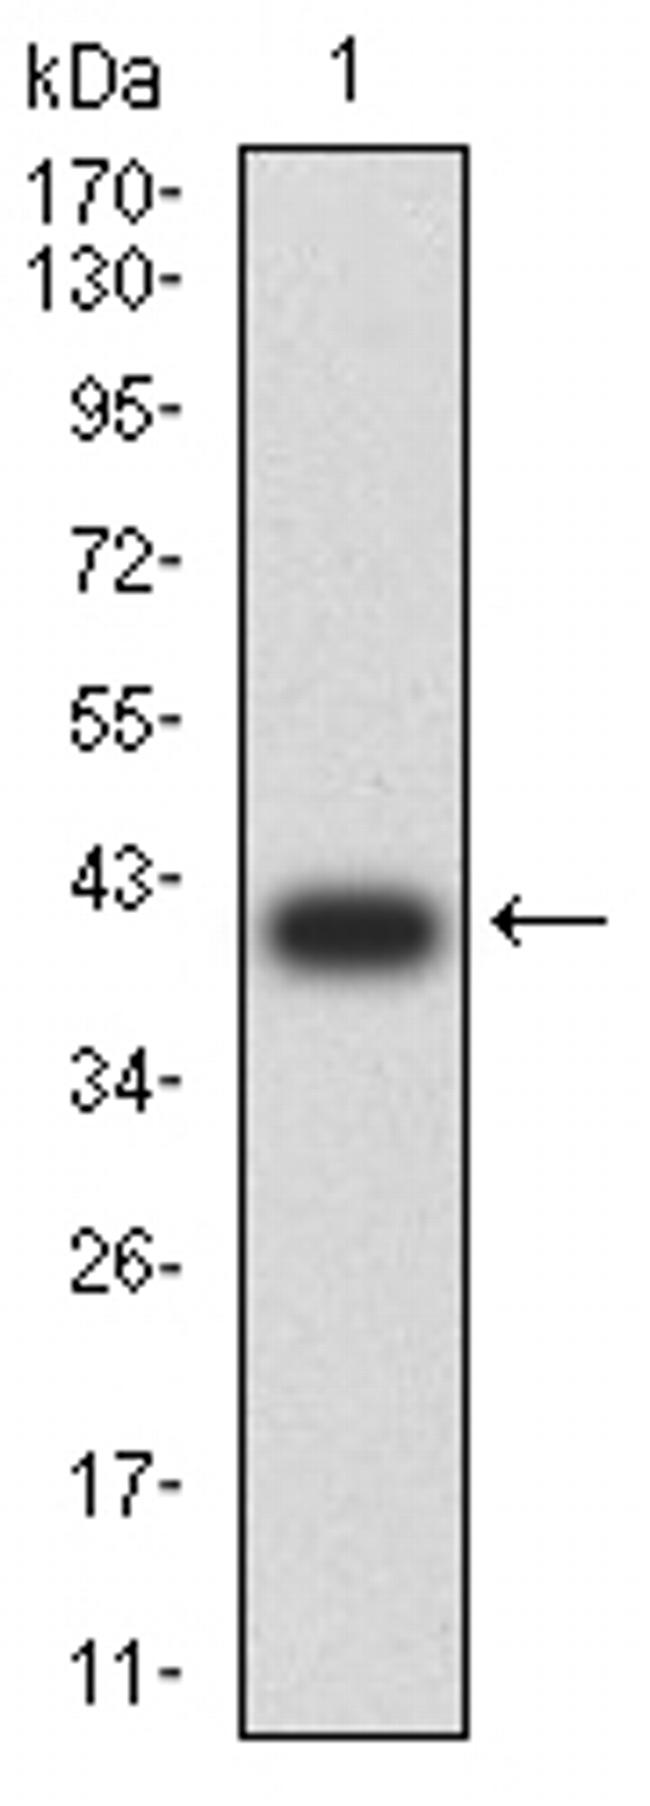 C1QA Antibody in Western Blot (WB)